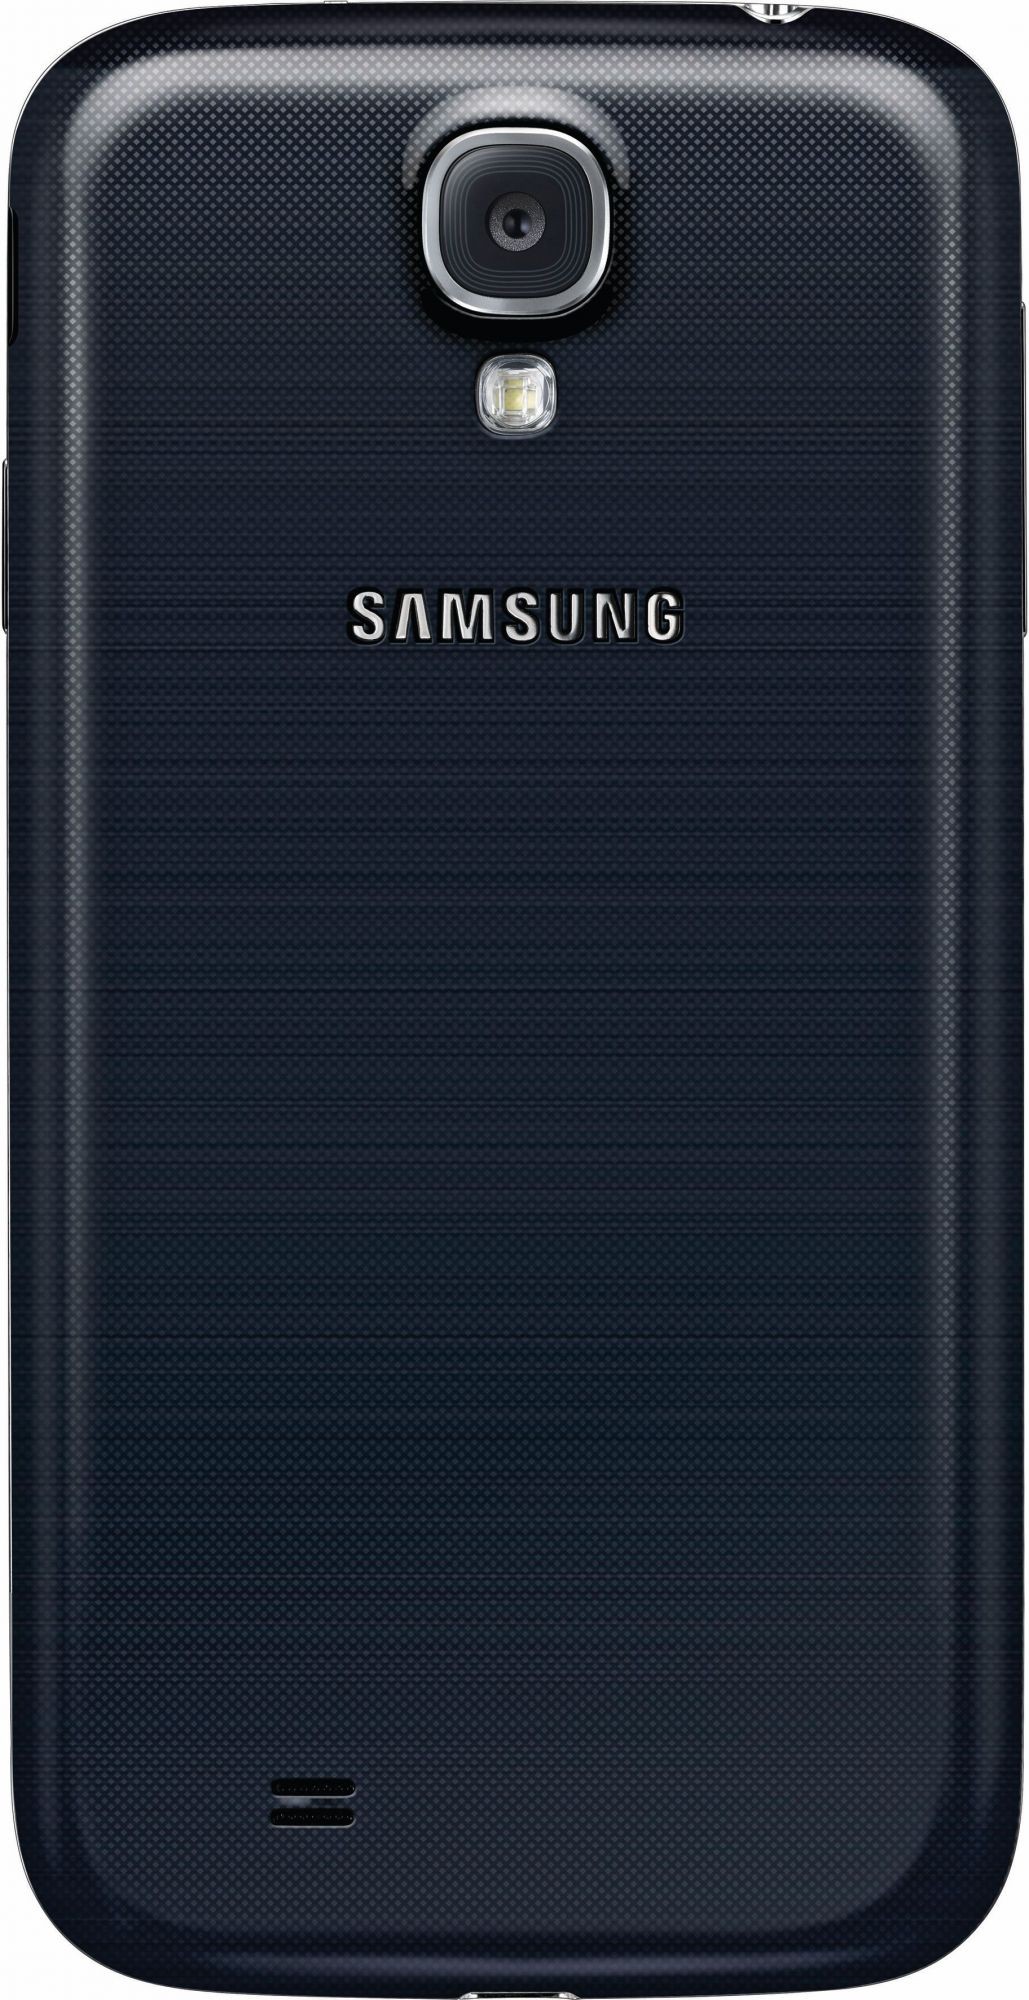 самсунг галакси s4 цена Samsung Galaxy S IV (GT-I9500) ВКонтакте